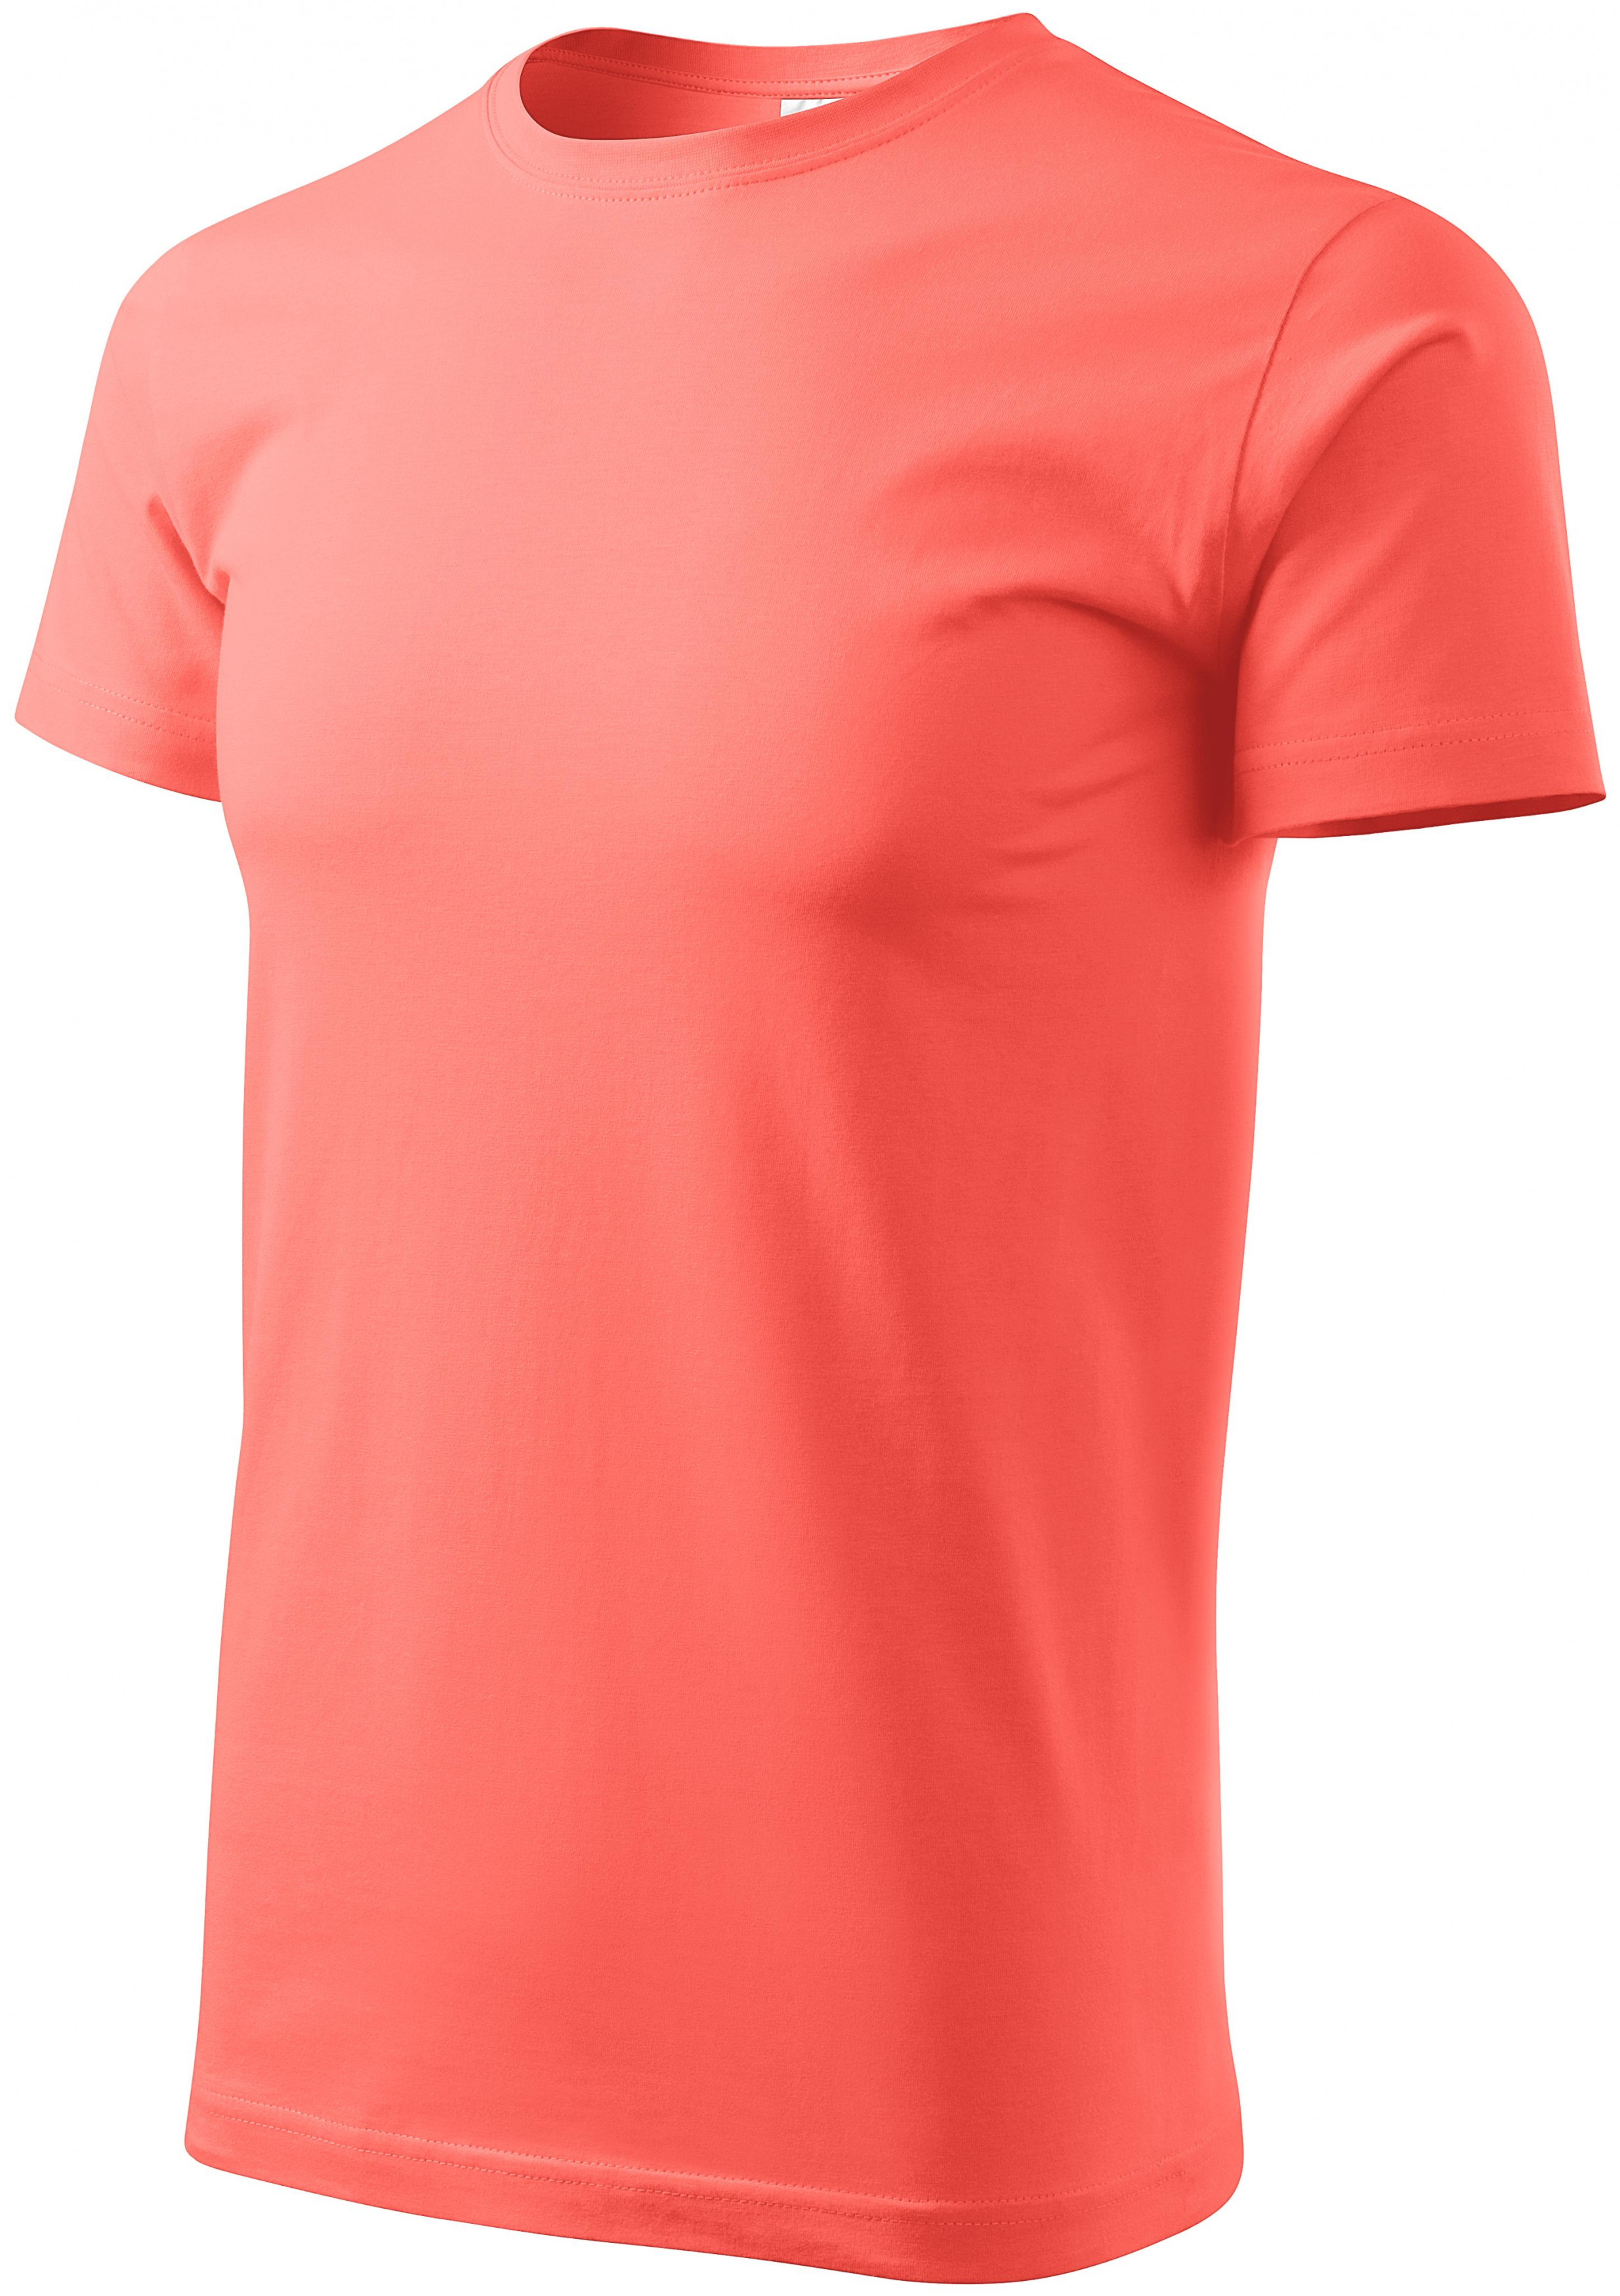 Pánske tričko jednoduché, koralová, 2XL